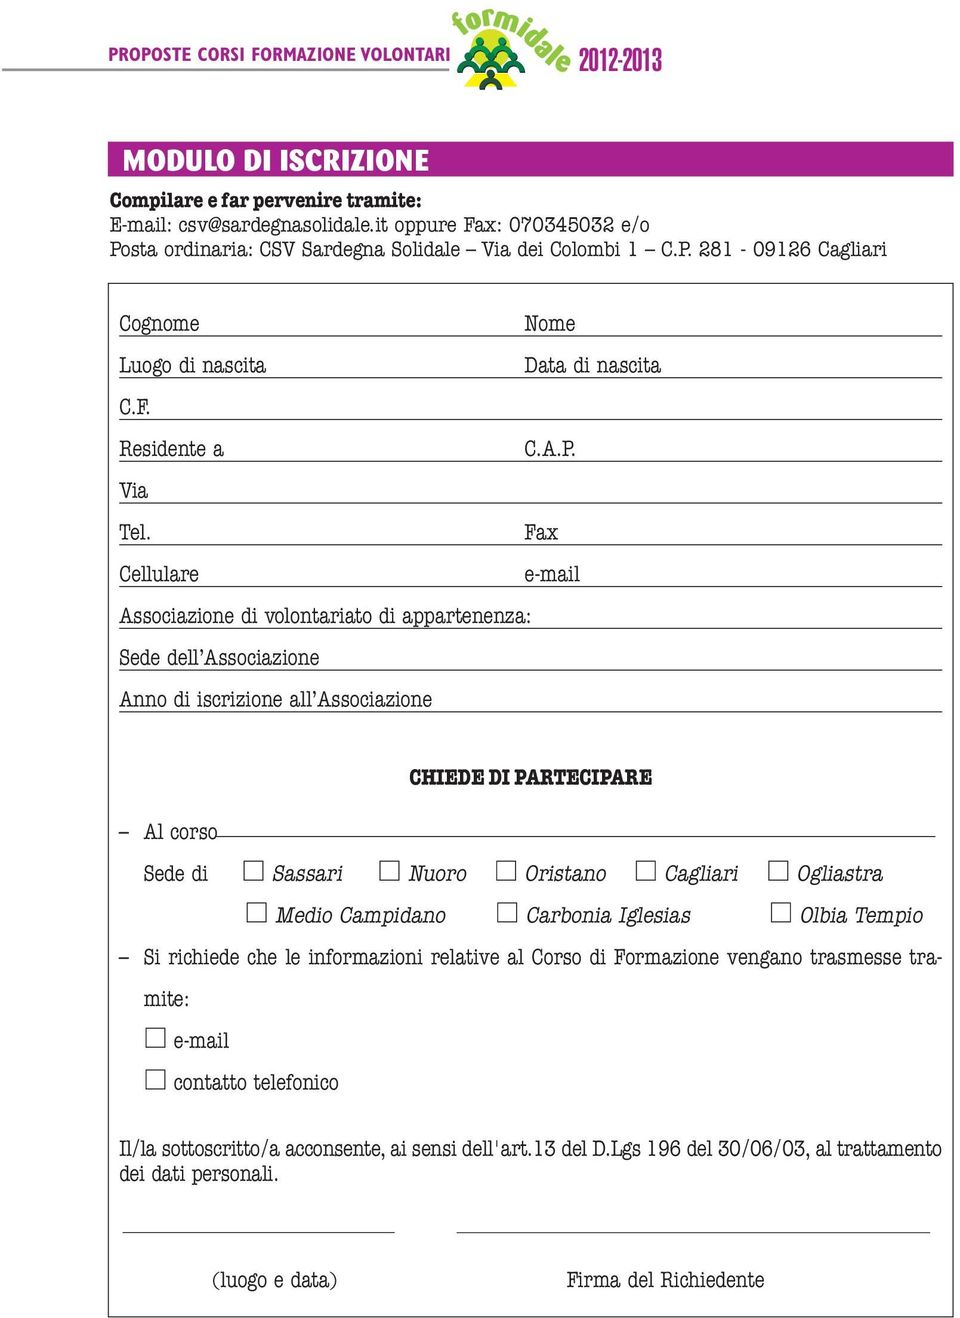 Fax Cellulare e-mail Associazione di volontariato di appartenenza: Sede dell Associazione Anno di iscrizione all Associazione CHIEDE DI PARTECIPARE Al corso Sede di Sassari Nuoro Oristano Cagliari